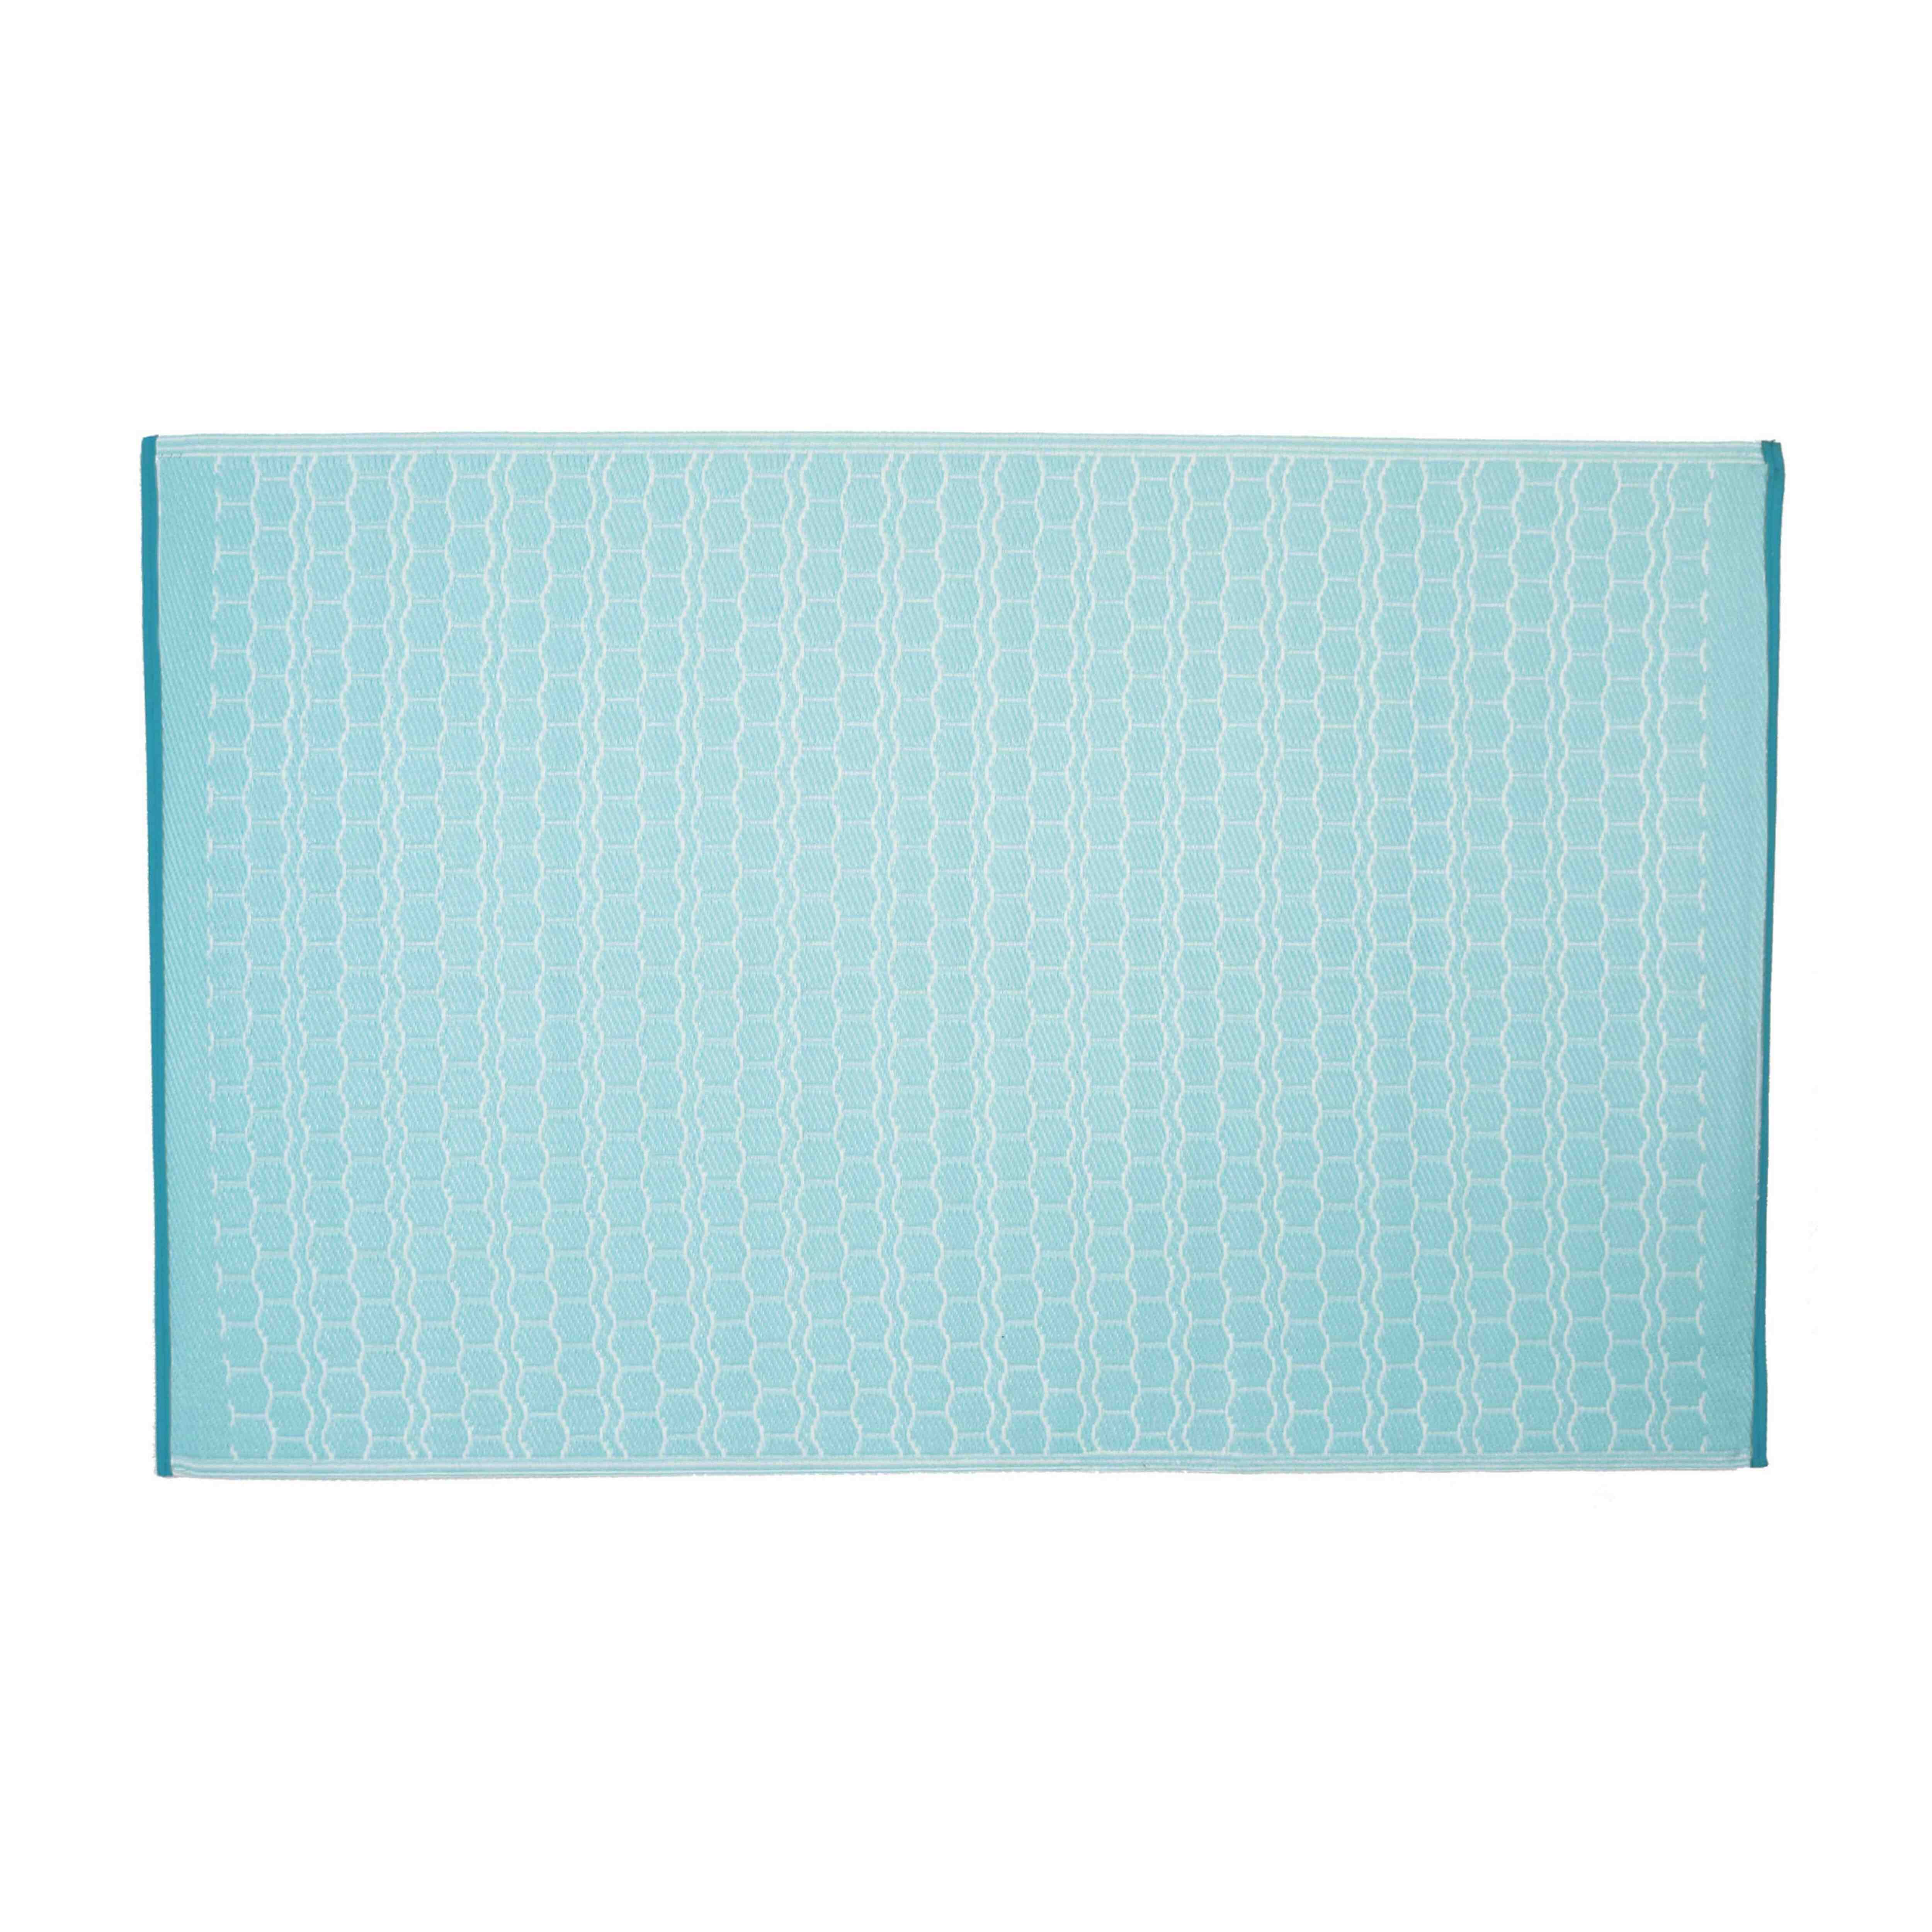 Tapis d'extérieur rectangulaire en polypropylène - bleu et blanc